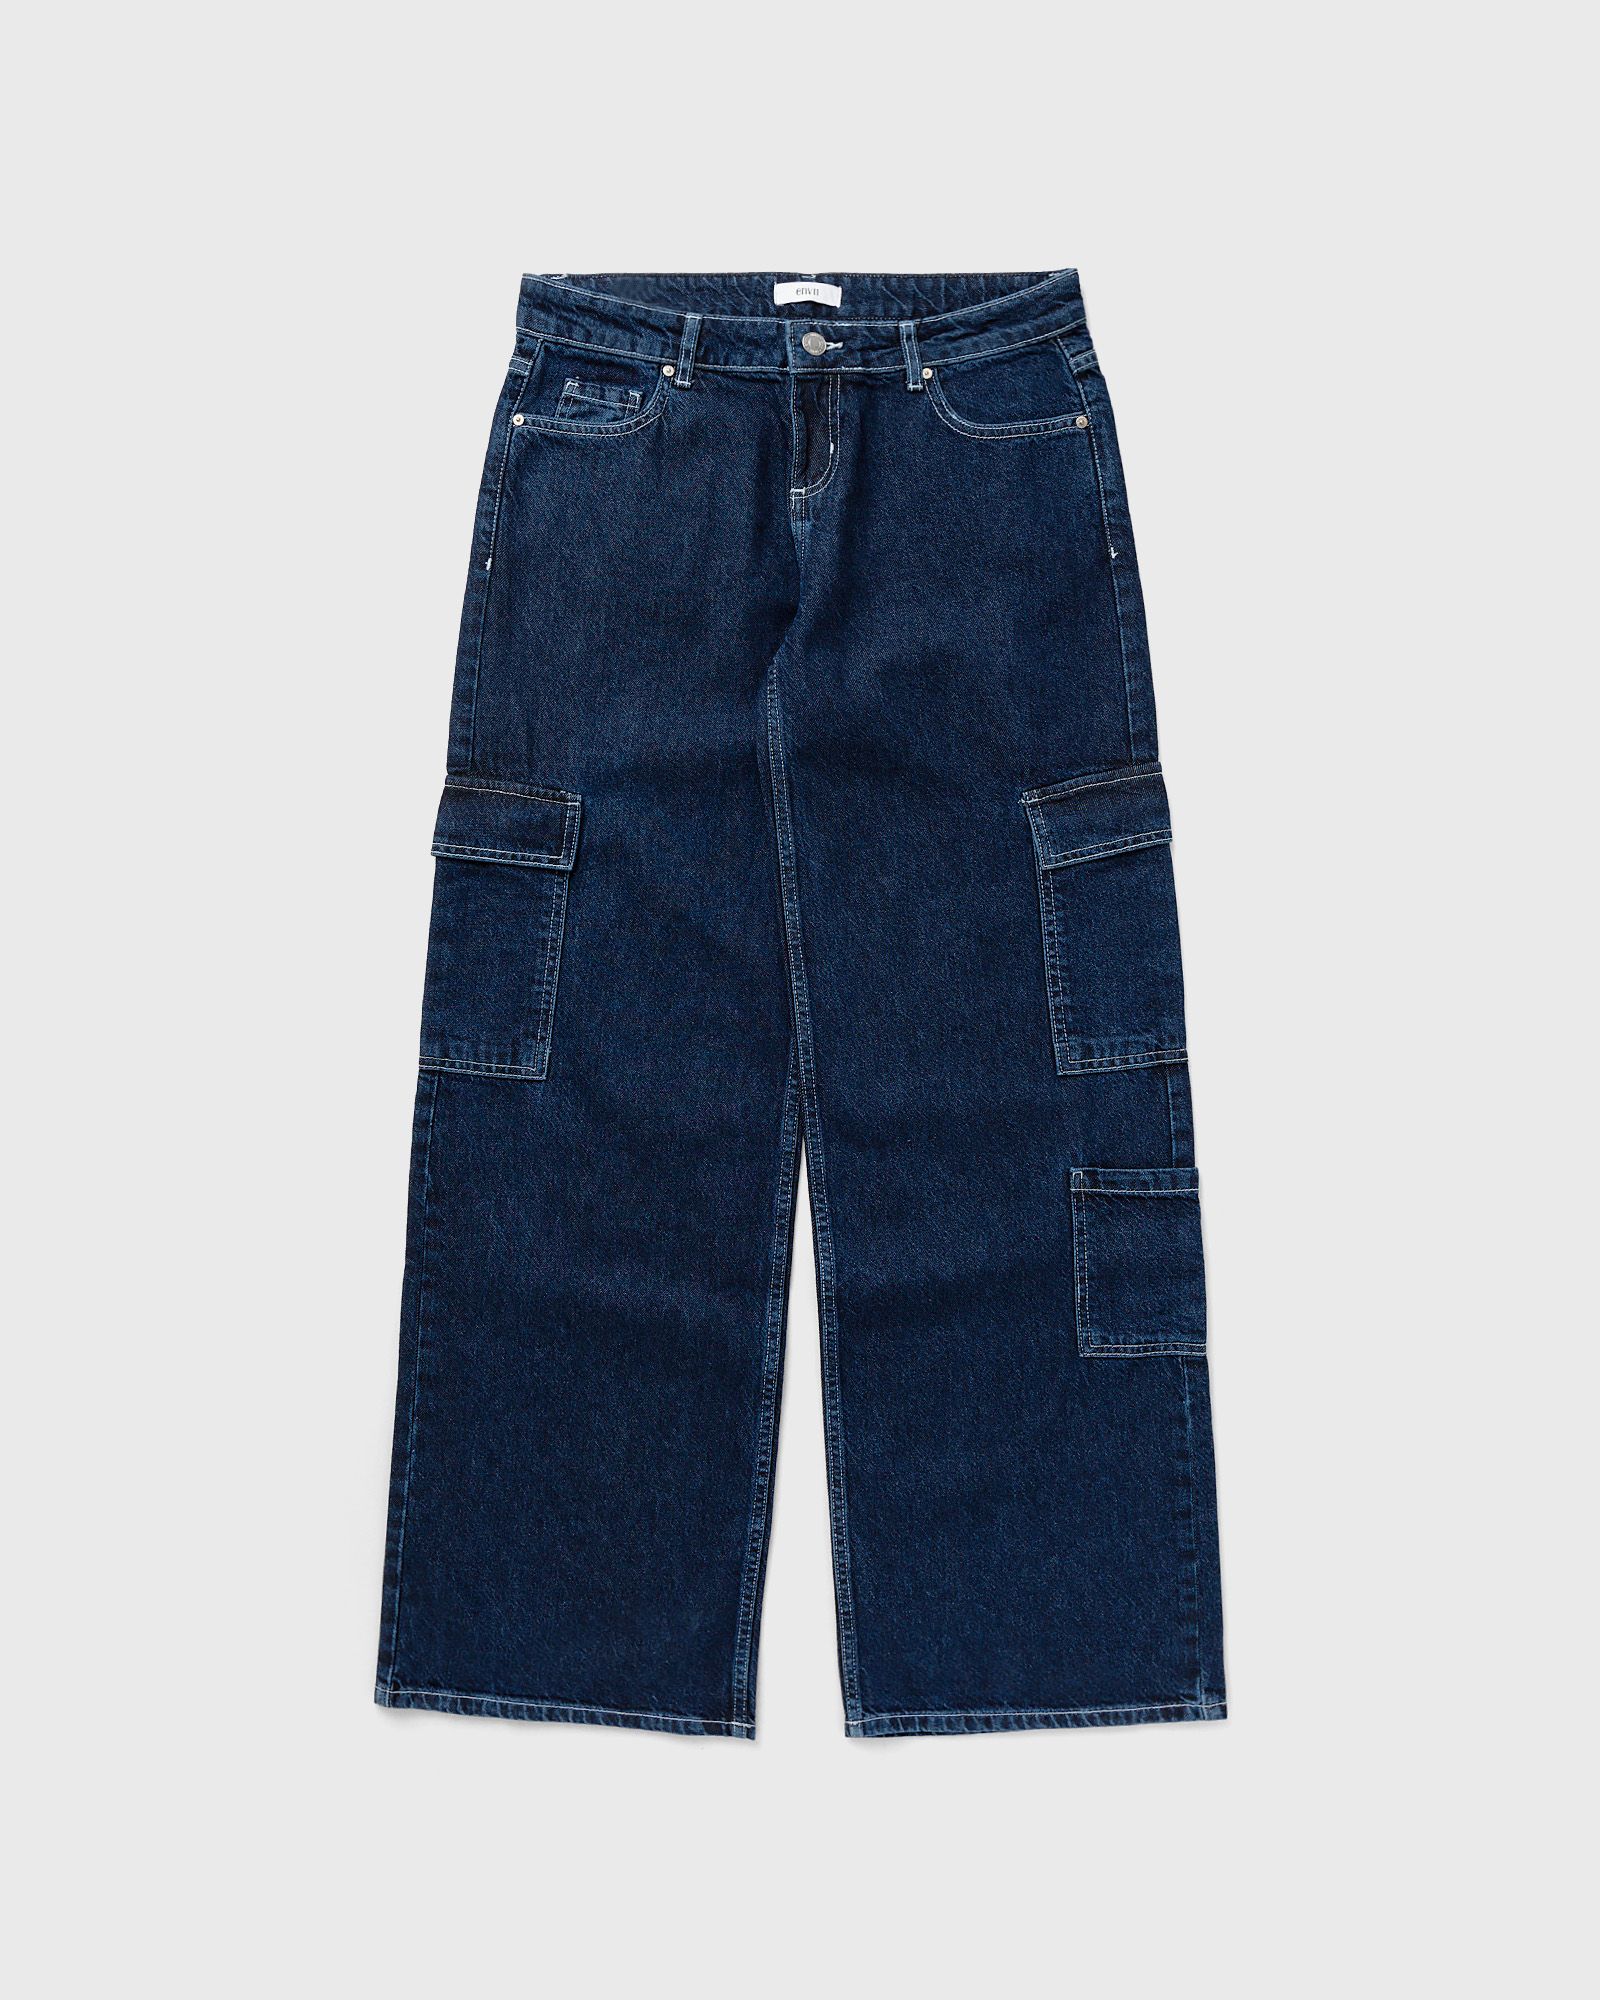 Envii - enbike cargo jeans 6937 women jeans blue in größe:m